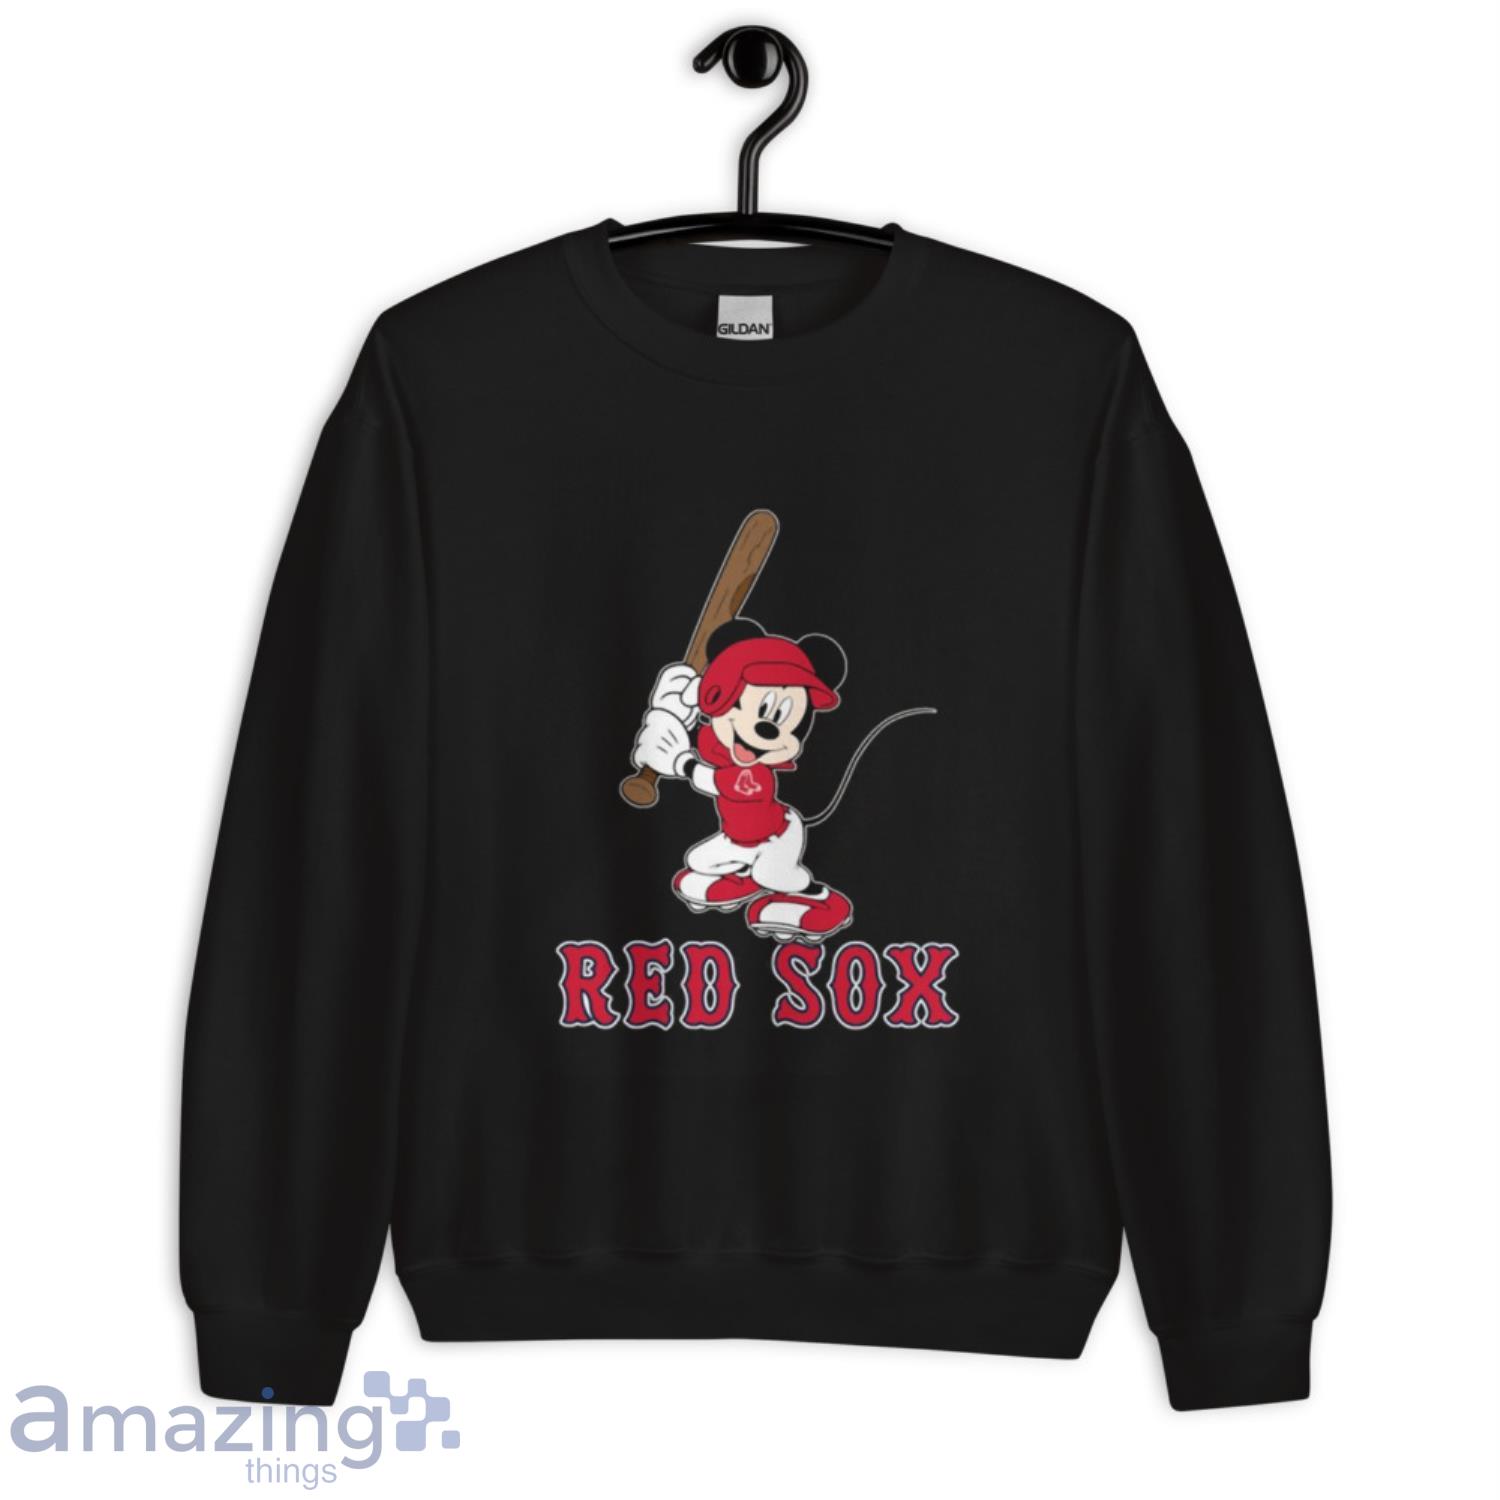 MLB Baseball Boston Red Sox Cheerful Mickey Mouse Shirt